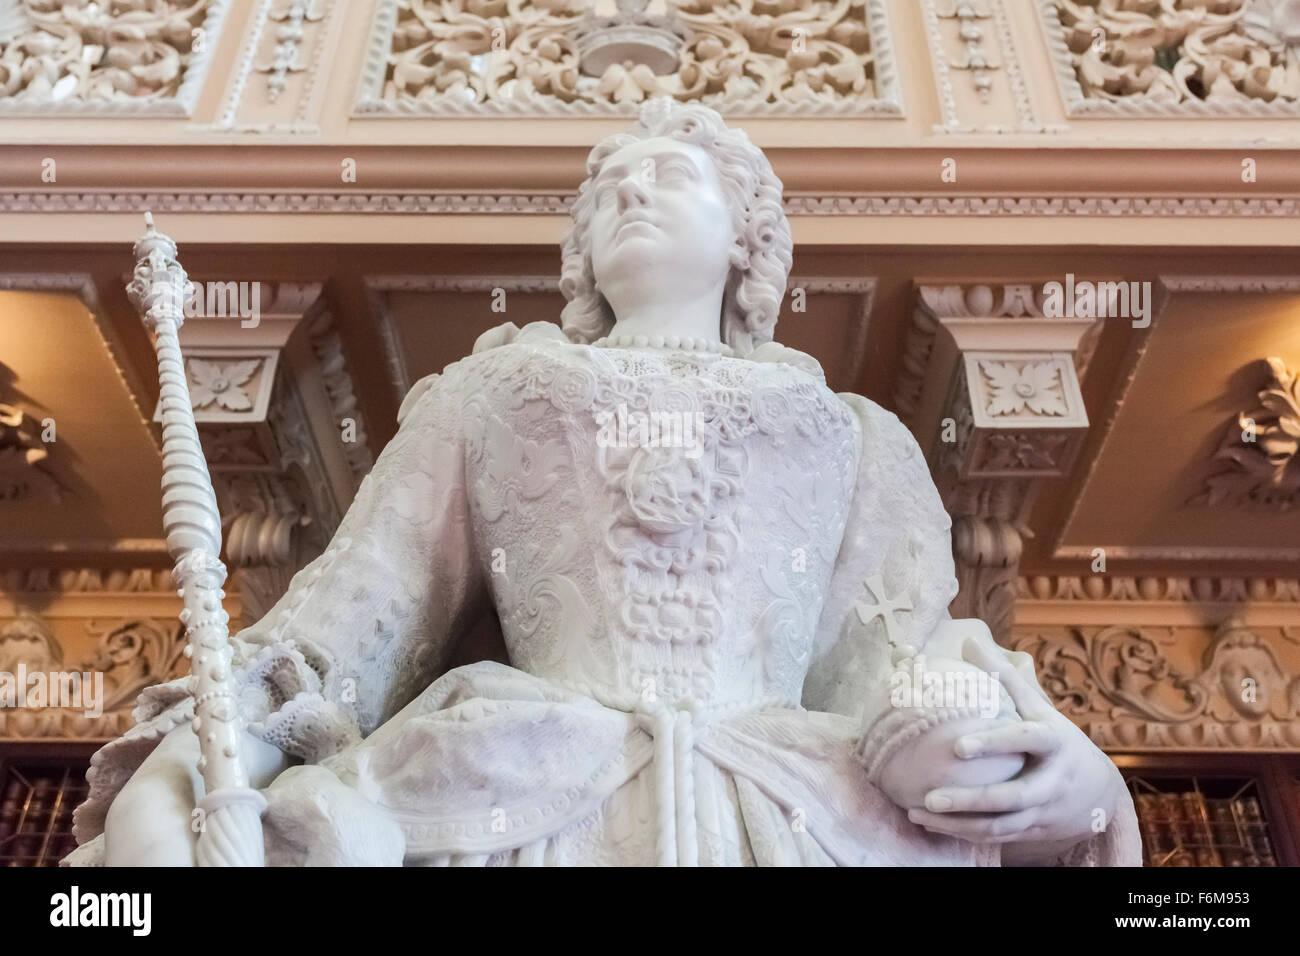 Statua in marmo di Queen Anne da Johannes Michel Rysbrack nella biblioteca presso il Palazzo di Blenheim, Woodstock, Oxfordshire, Inghilterra Foto Stock